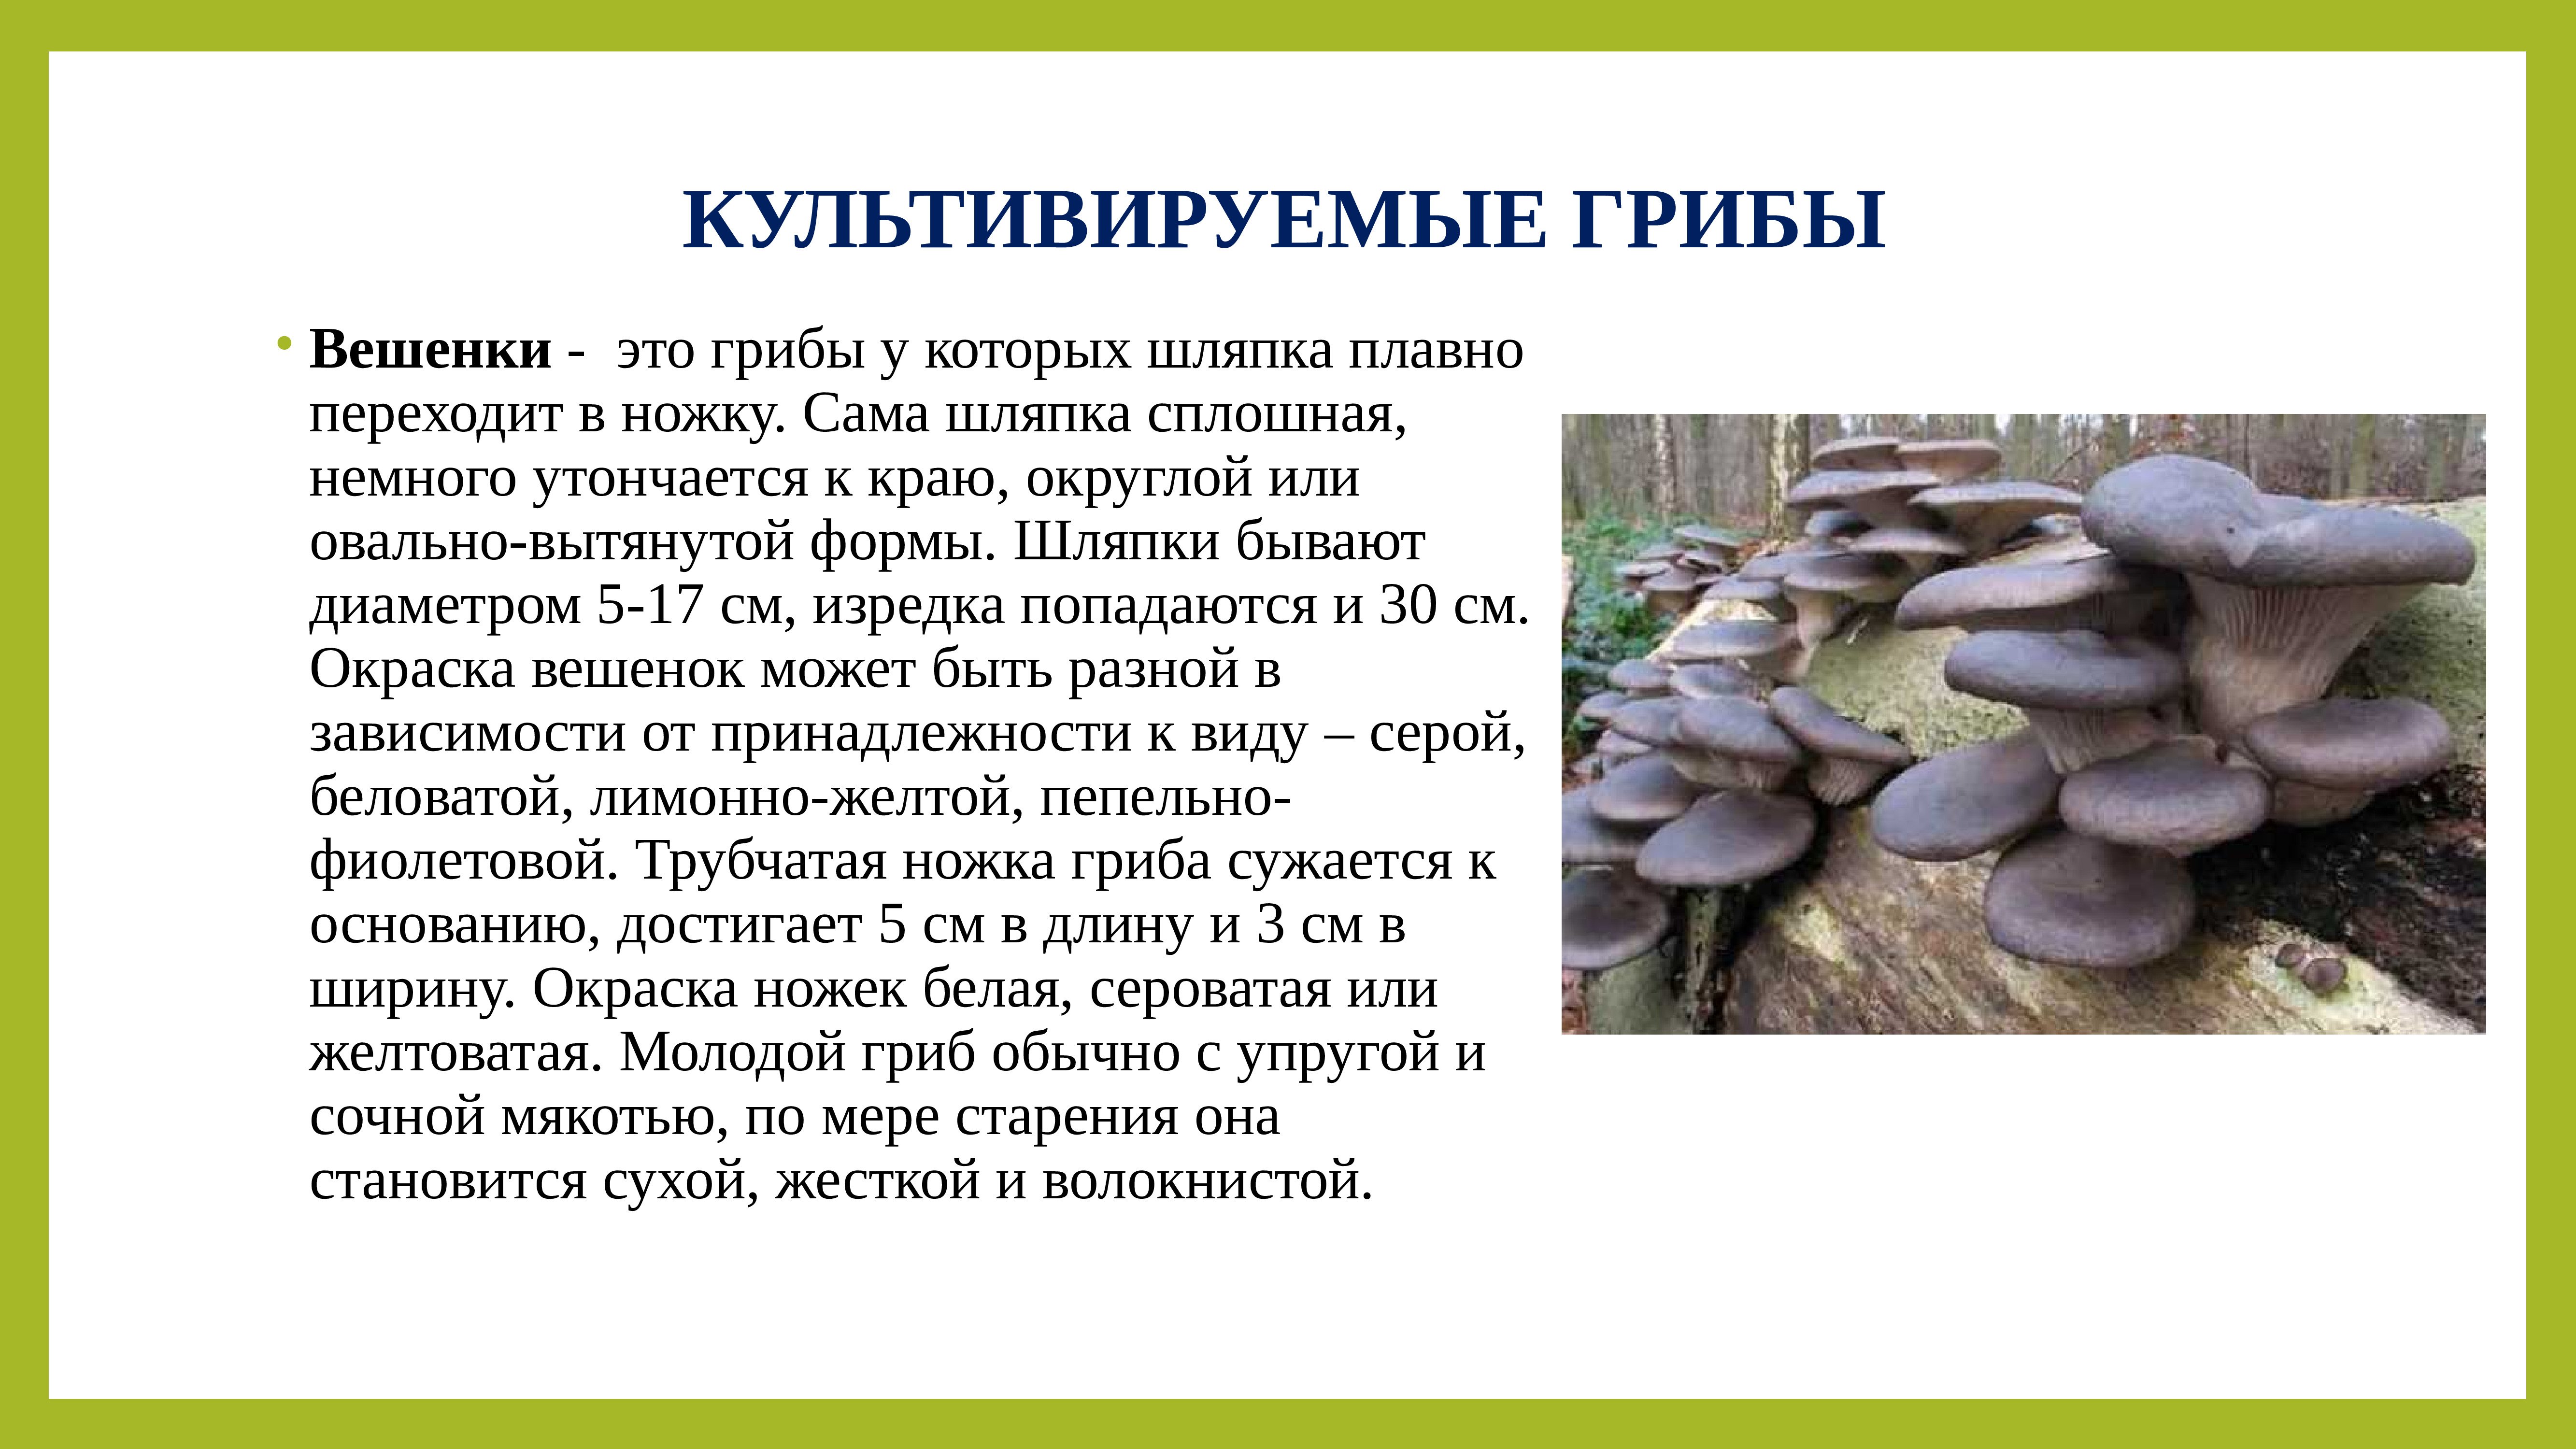 Культивируемые грибы и условия выращивания. Культивируемые грибы вешенка. Внешний вид гриба строение. Строение гриба вешенка.